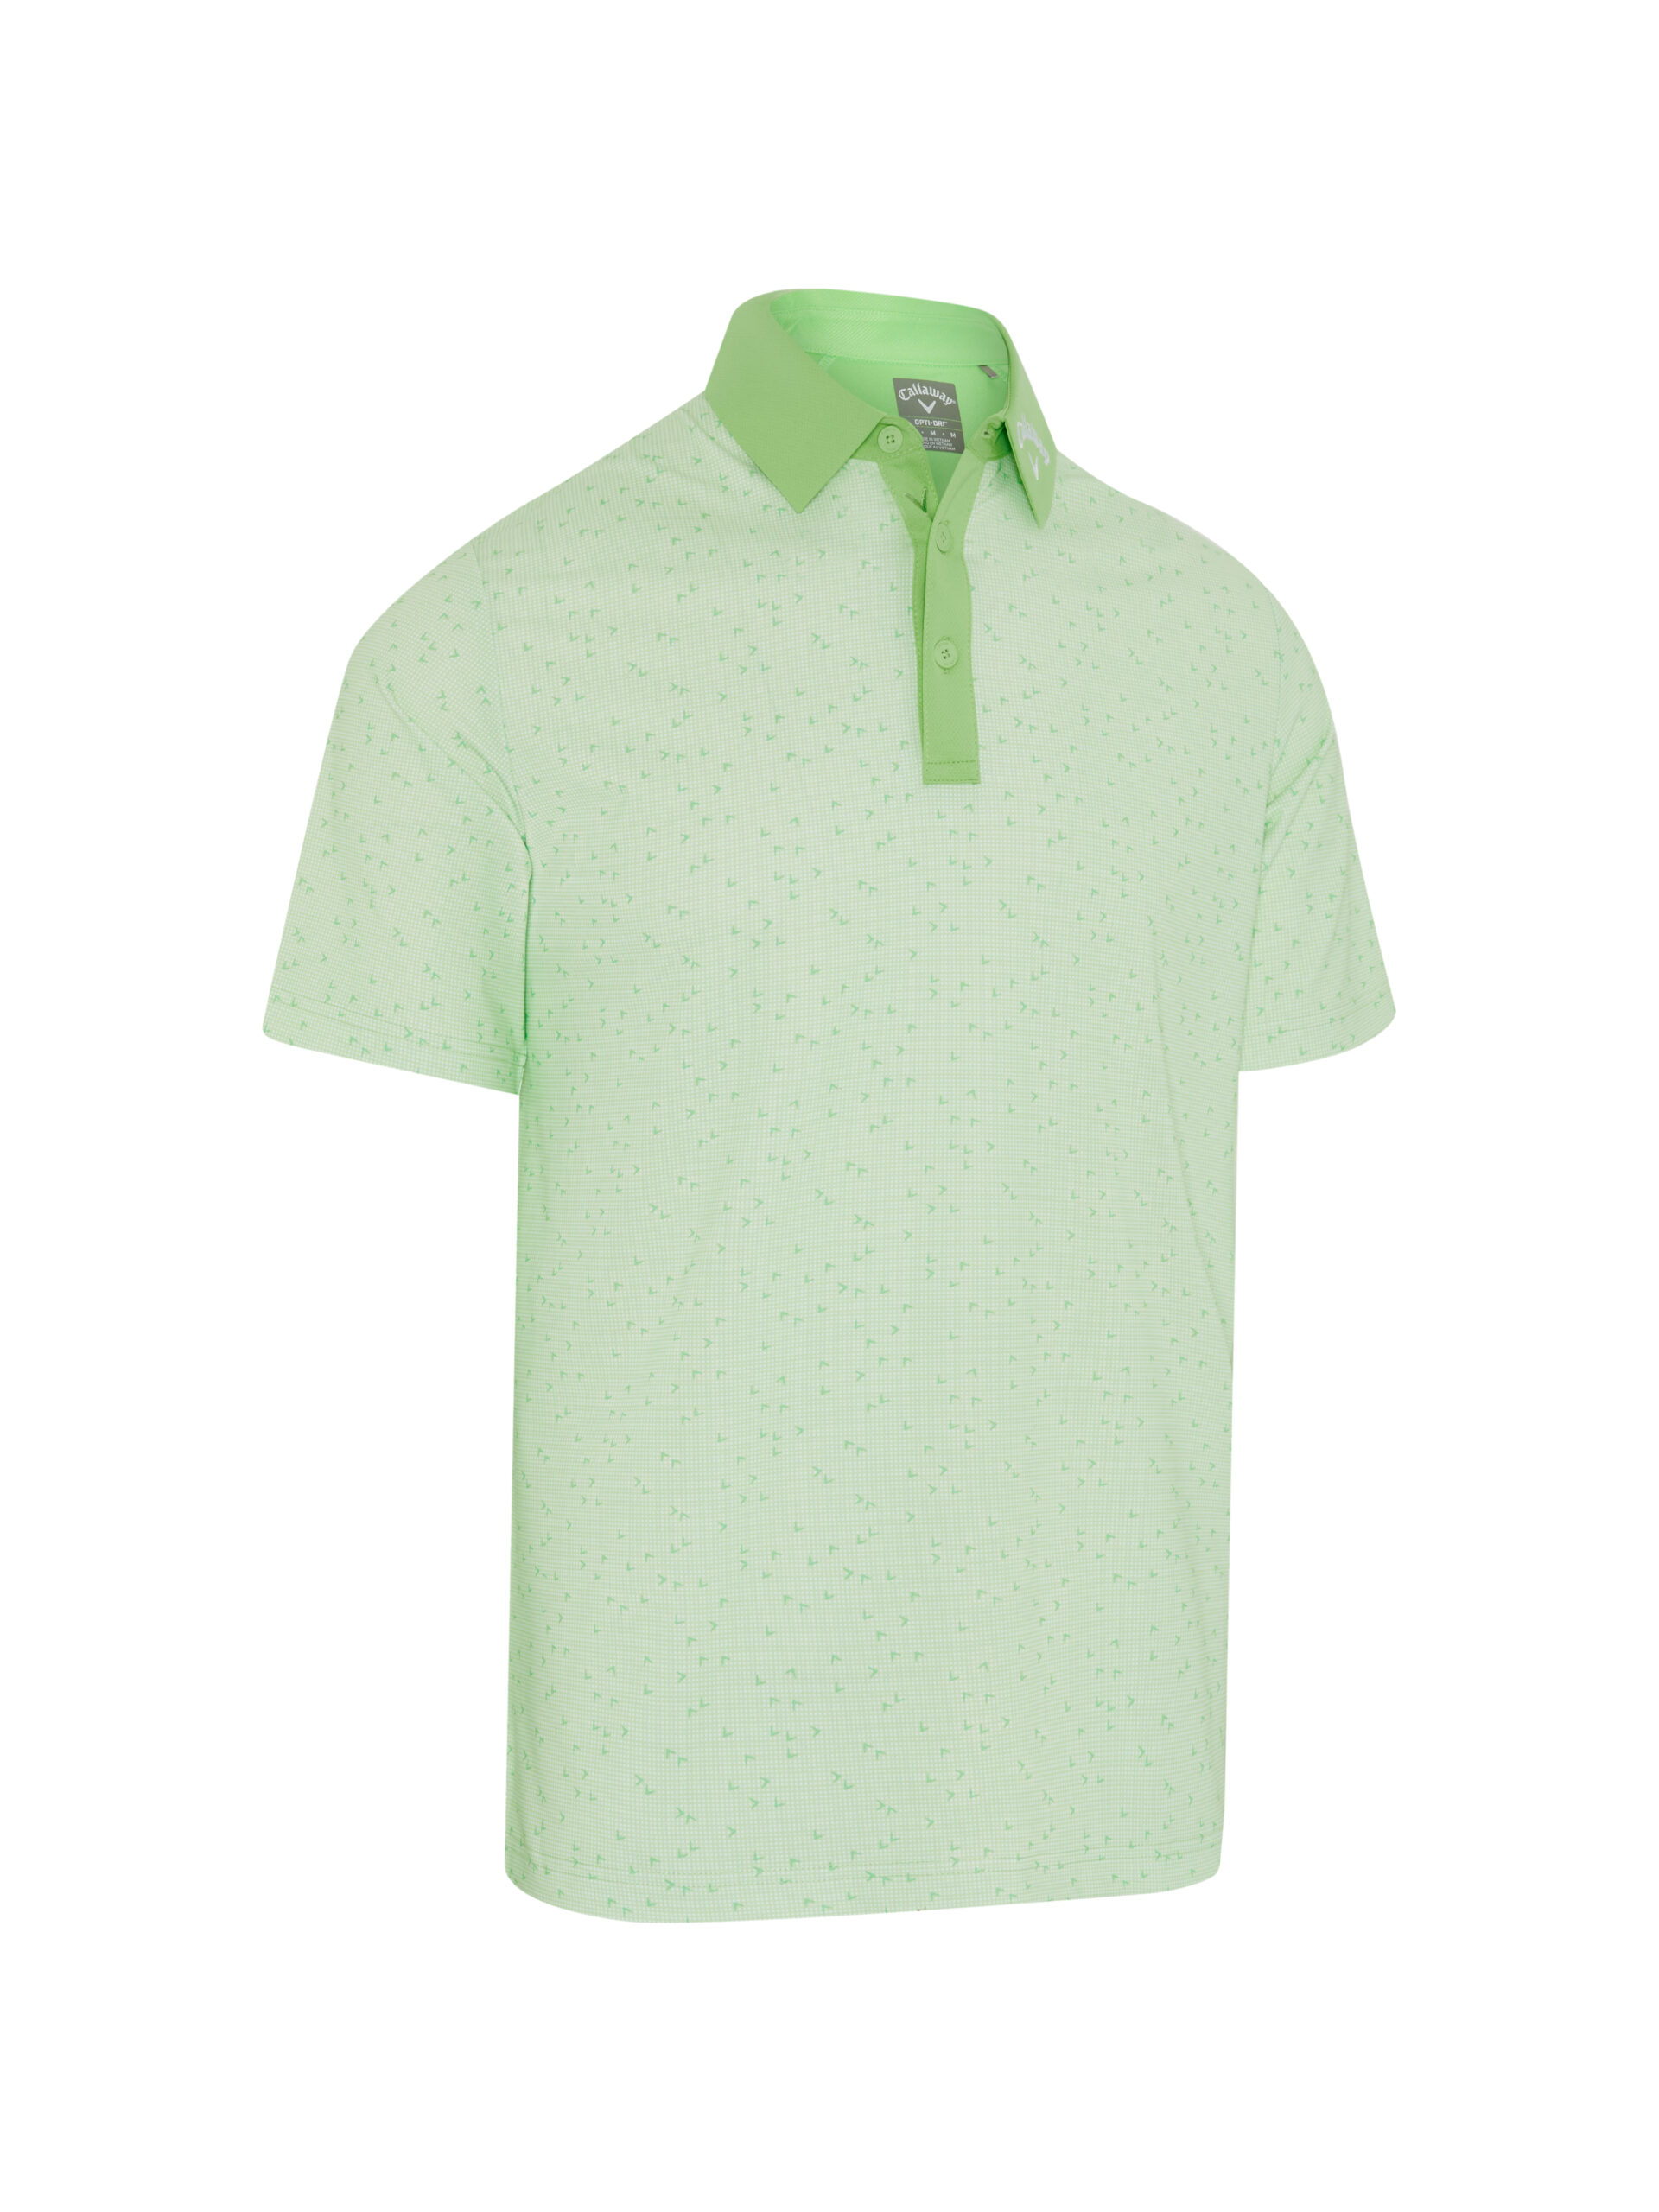 Levně Callaway Trademark All Over Chev pánské golfové triko, světle zelené